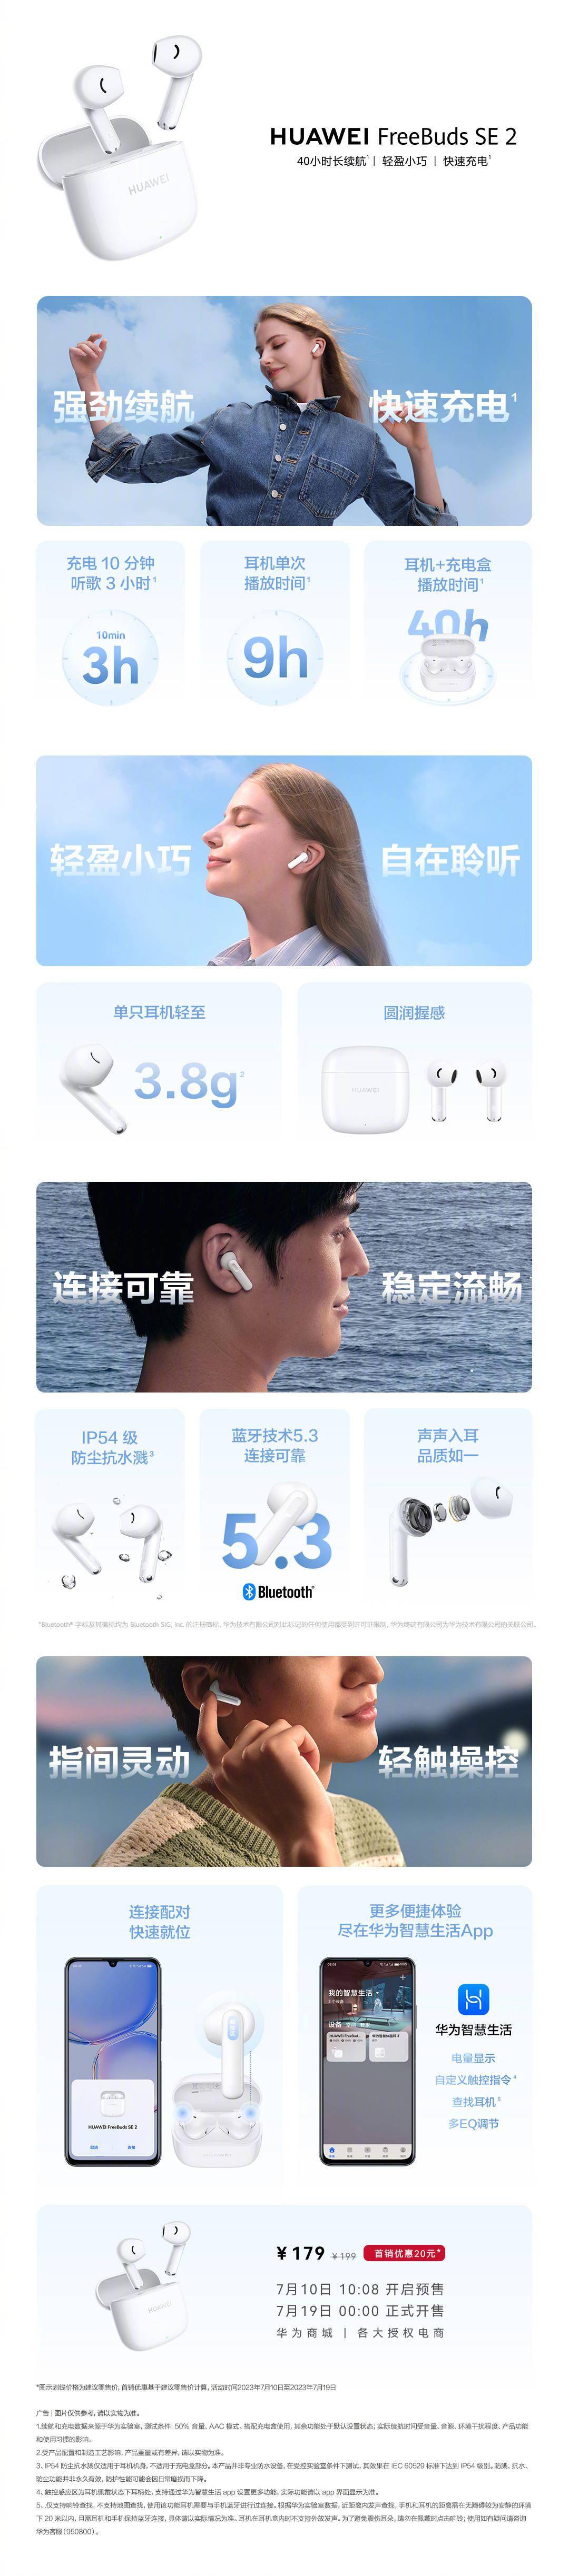 华为推出179元的FreeBuds SE 2耳机：支持蓝牙5.3协议 可与华为手机快速配对